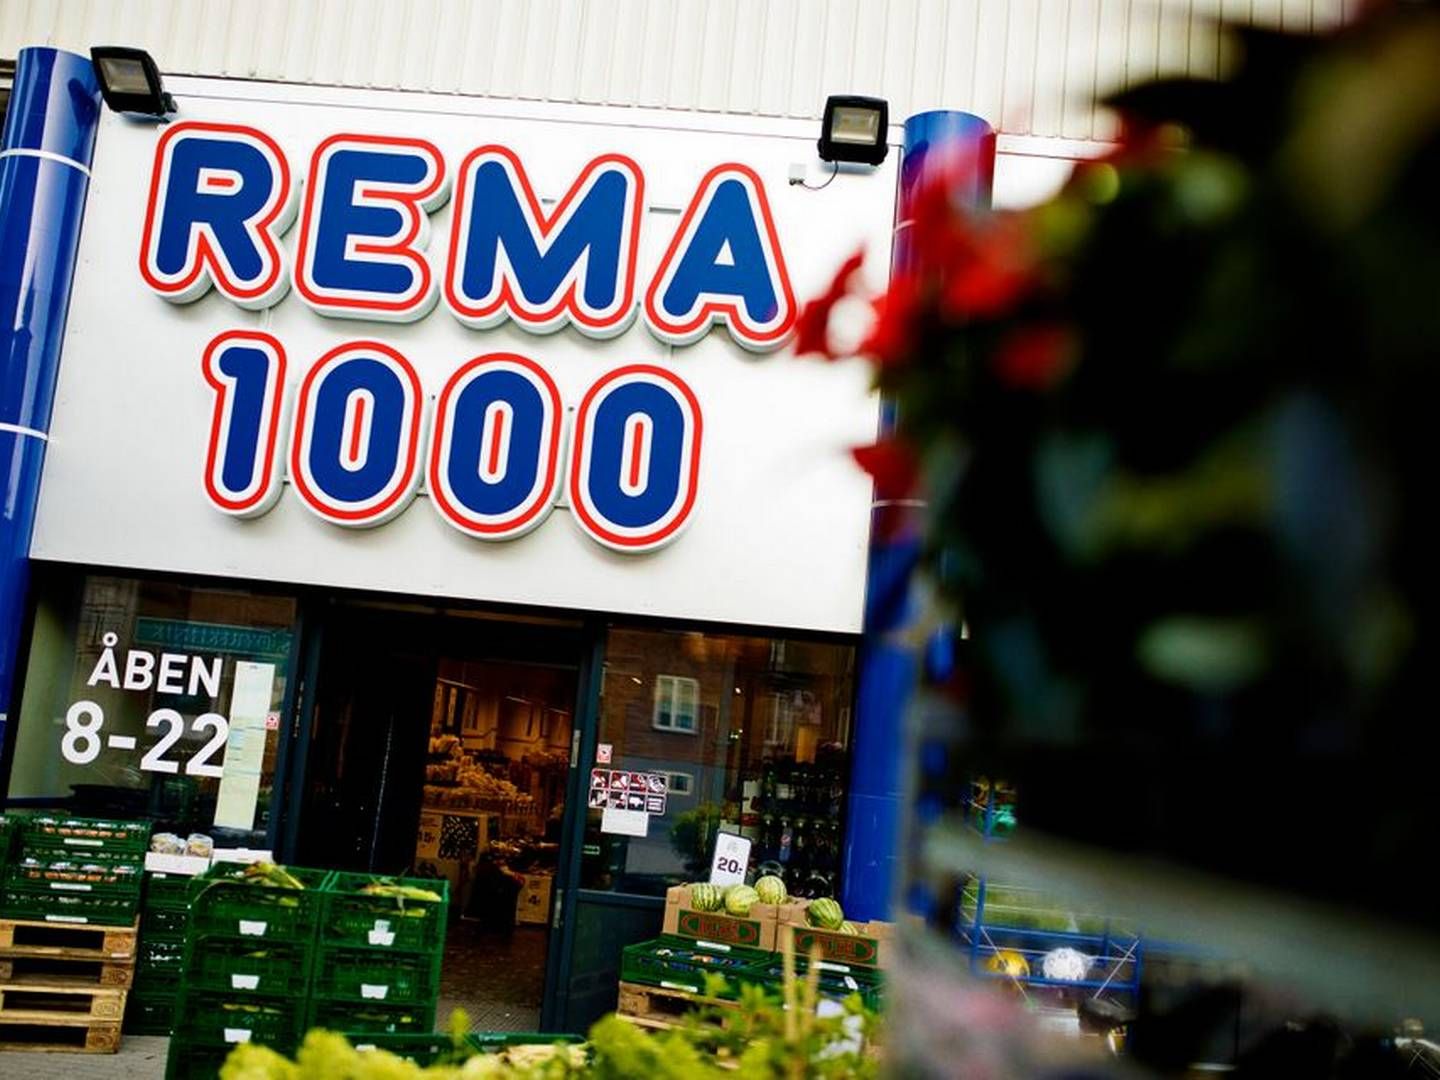 Rema 1000 er ejet af den familieejede, norske kocnern Reitan, der også driver 7-Eleven i Danmark og Norge samt tankstationerne Uno X. | Foto: Rema 1000/pr